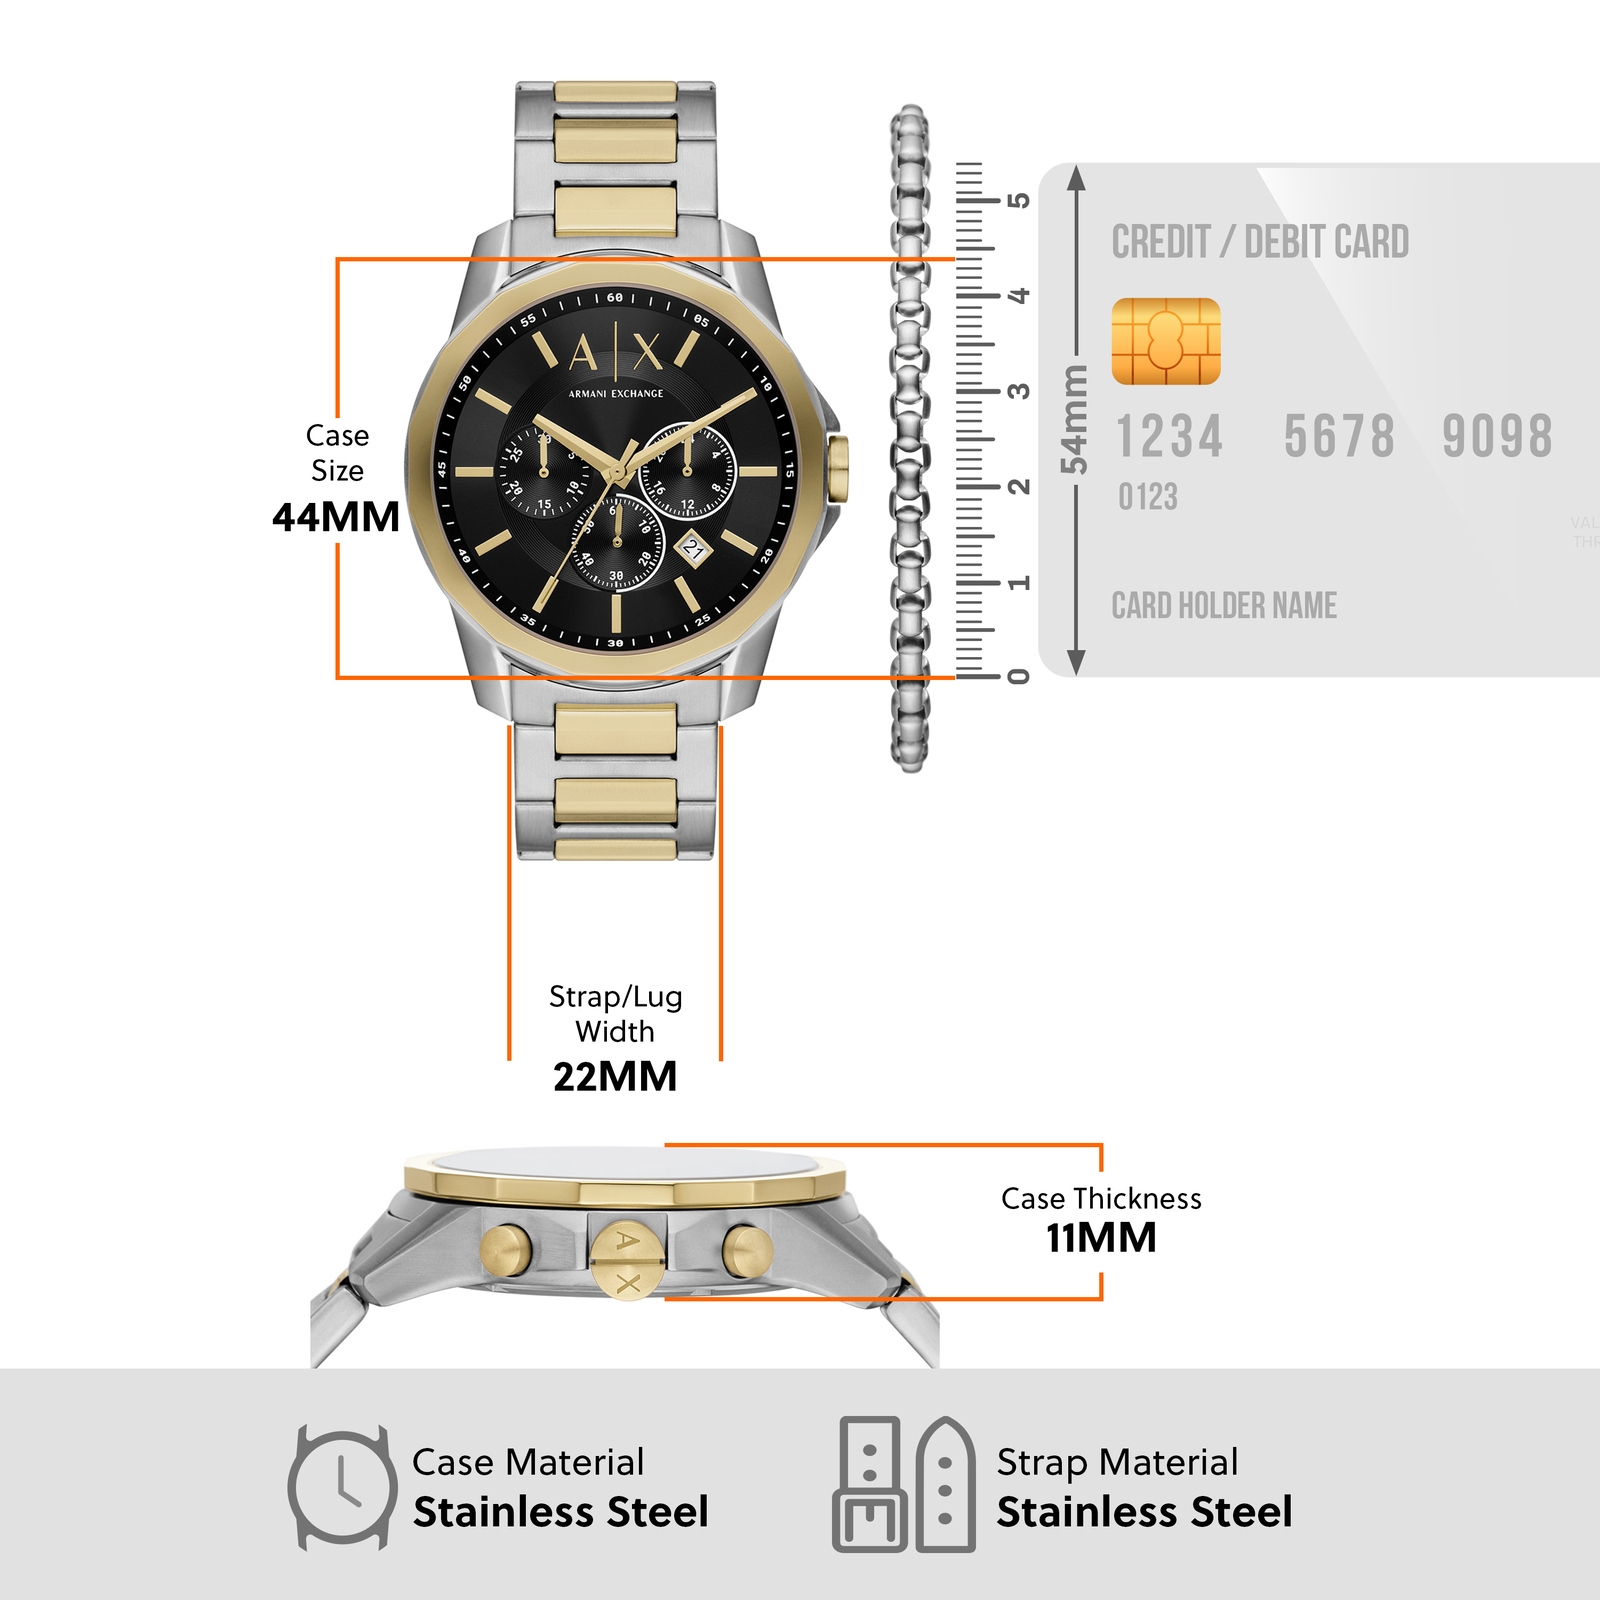 Armani Exchange Two Tone Watch AX7148SET